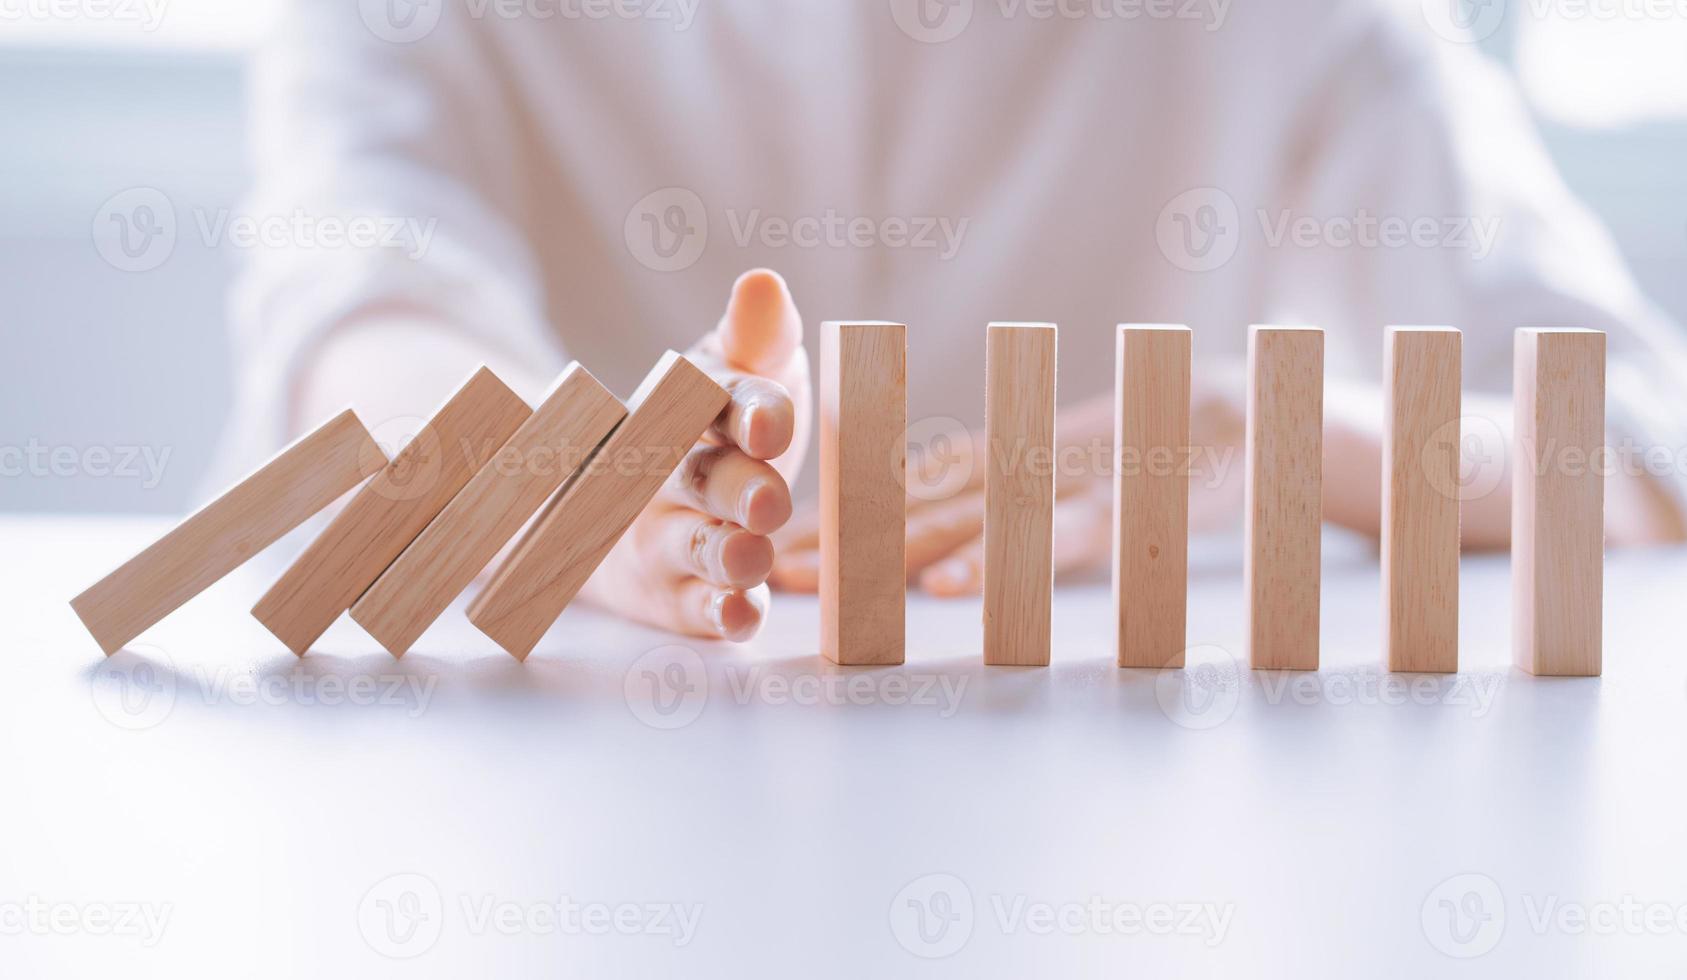 La mano de la mujer detiene el efecto de crisis empresarial de dominó de madera, concepto de protección de riesgos foto